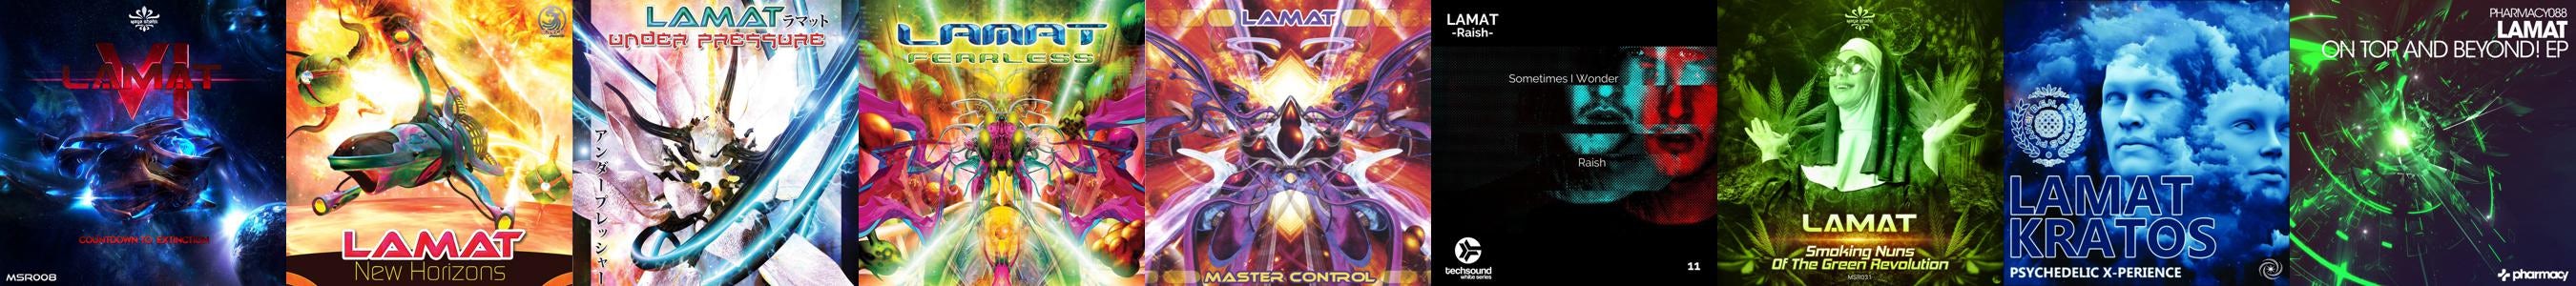 Lamat Store: Official Merch & Vinyl